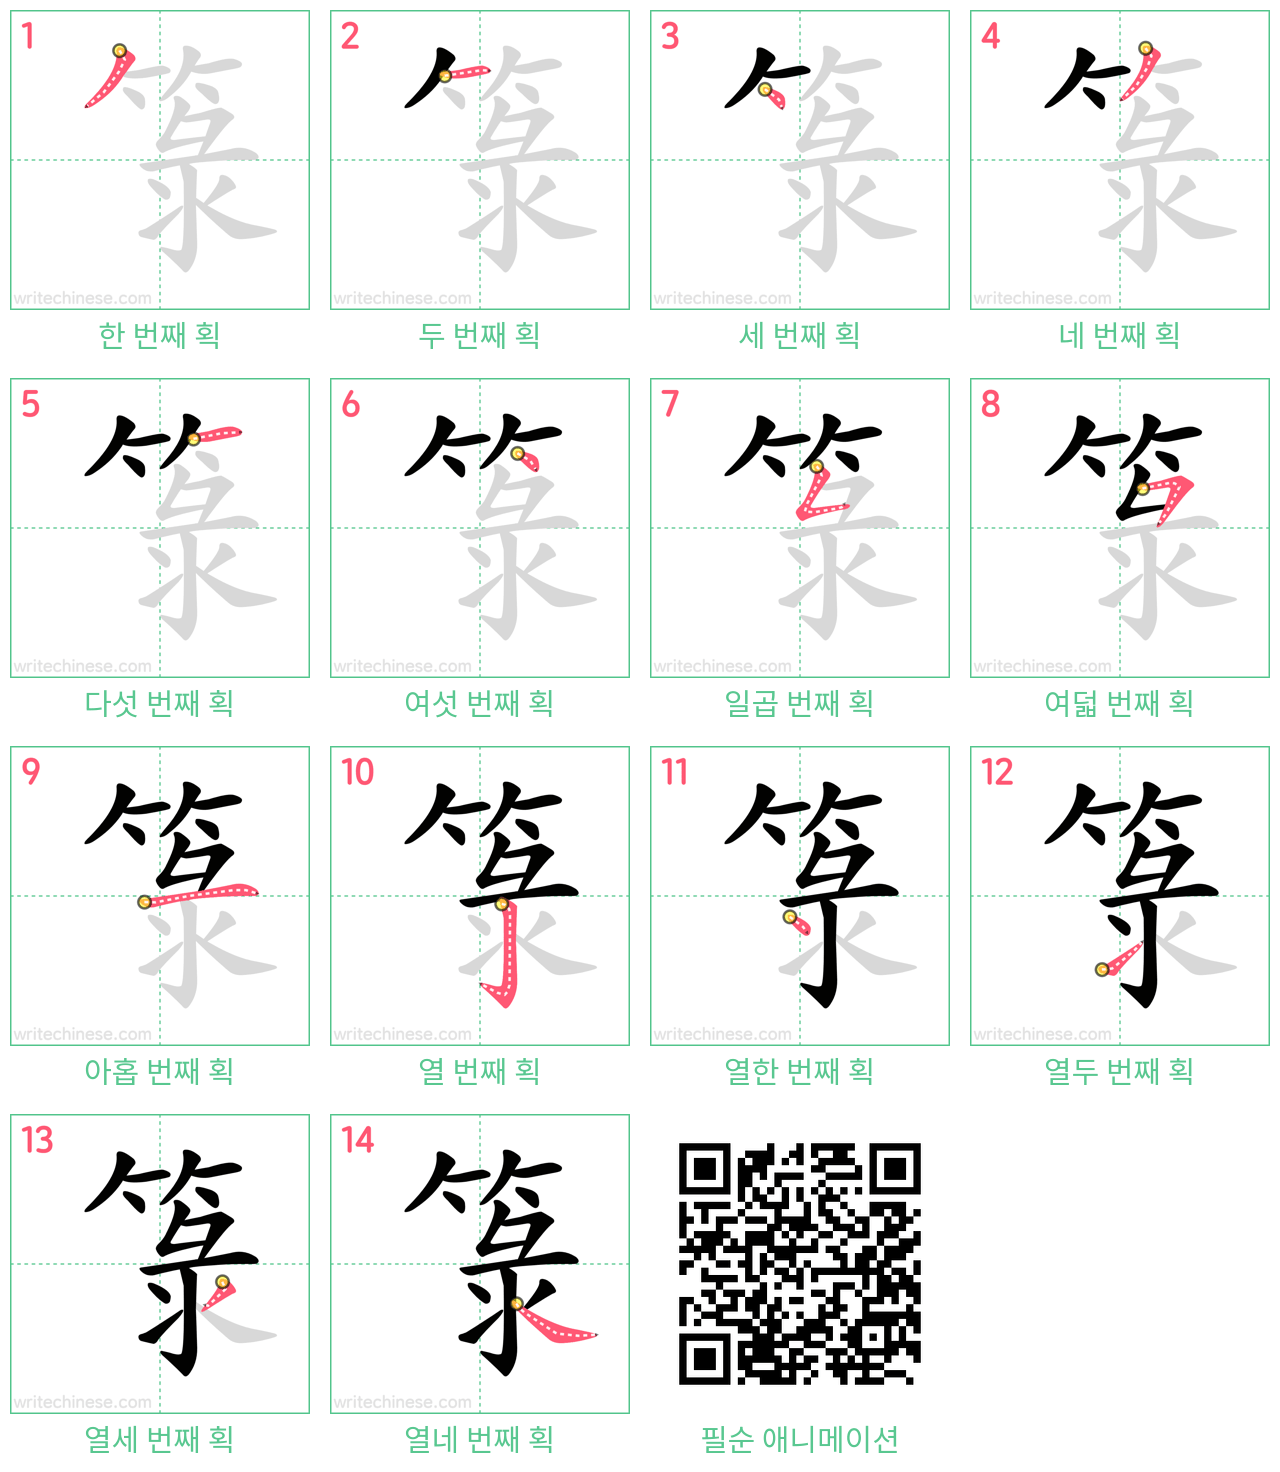 箓 step-by-step stroke order diagrams